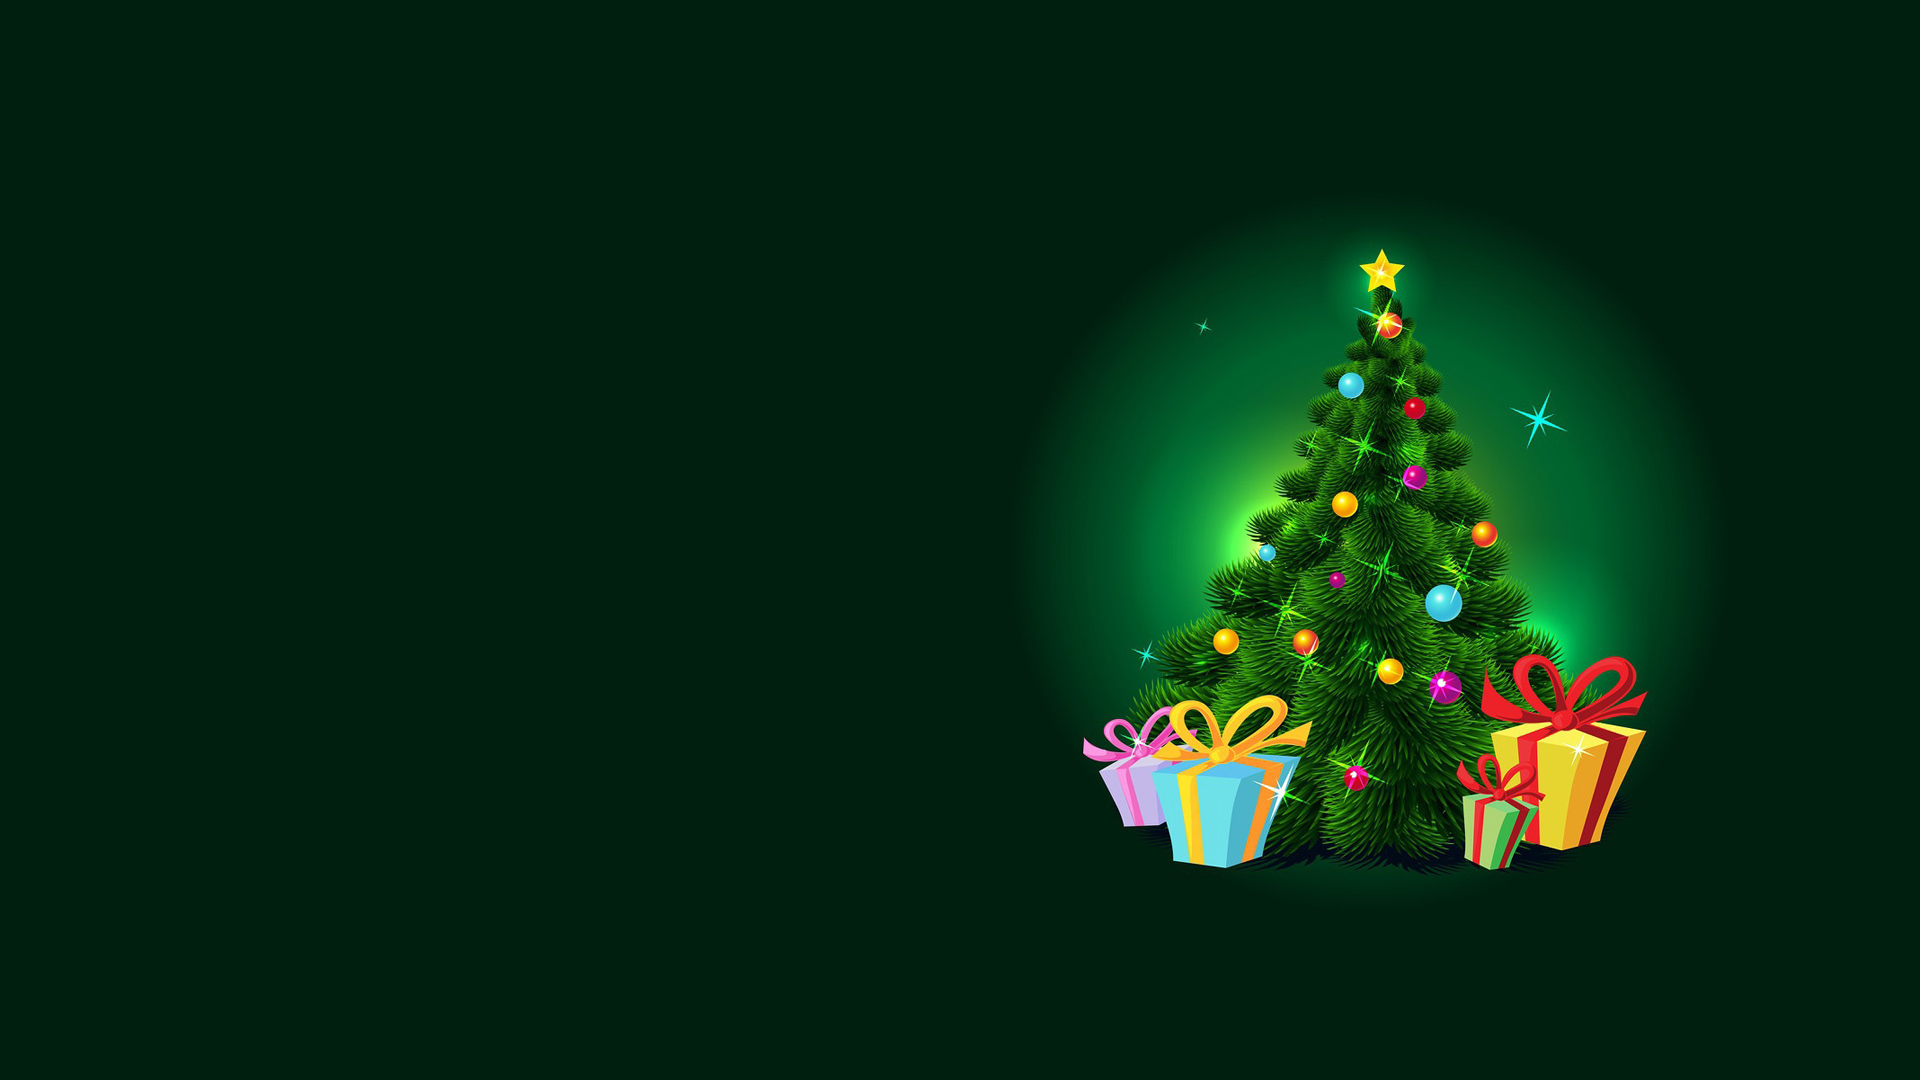 漂亮圣诞树,礼物,圣诞节桌面壁纸